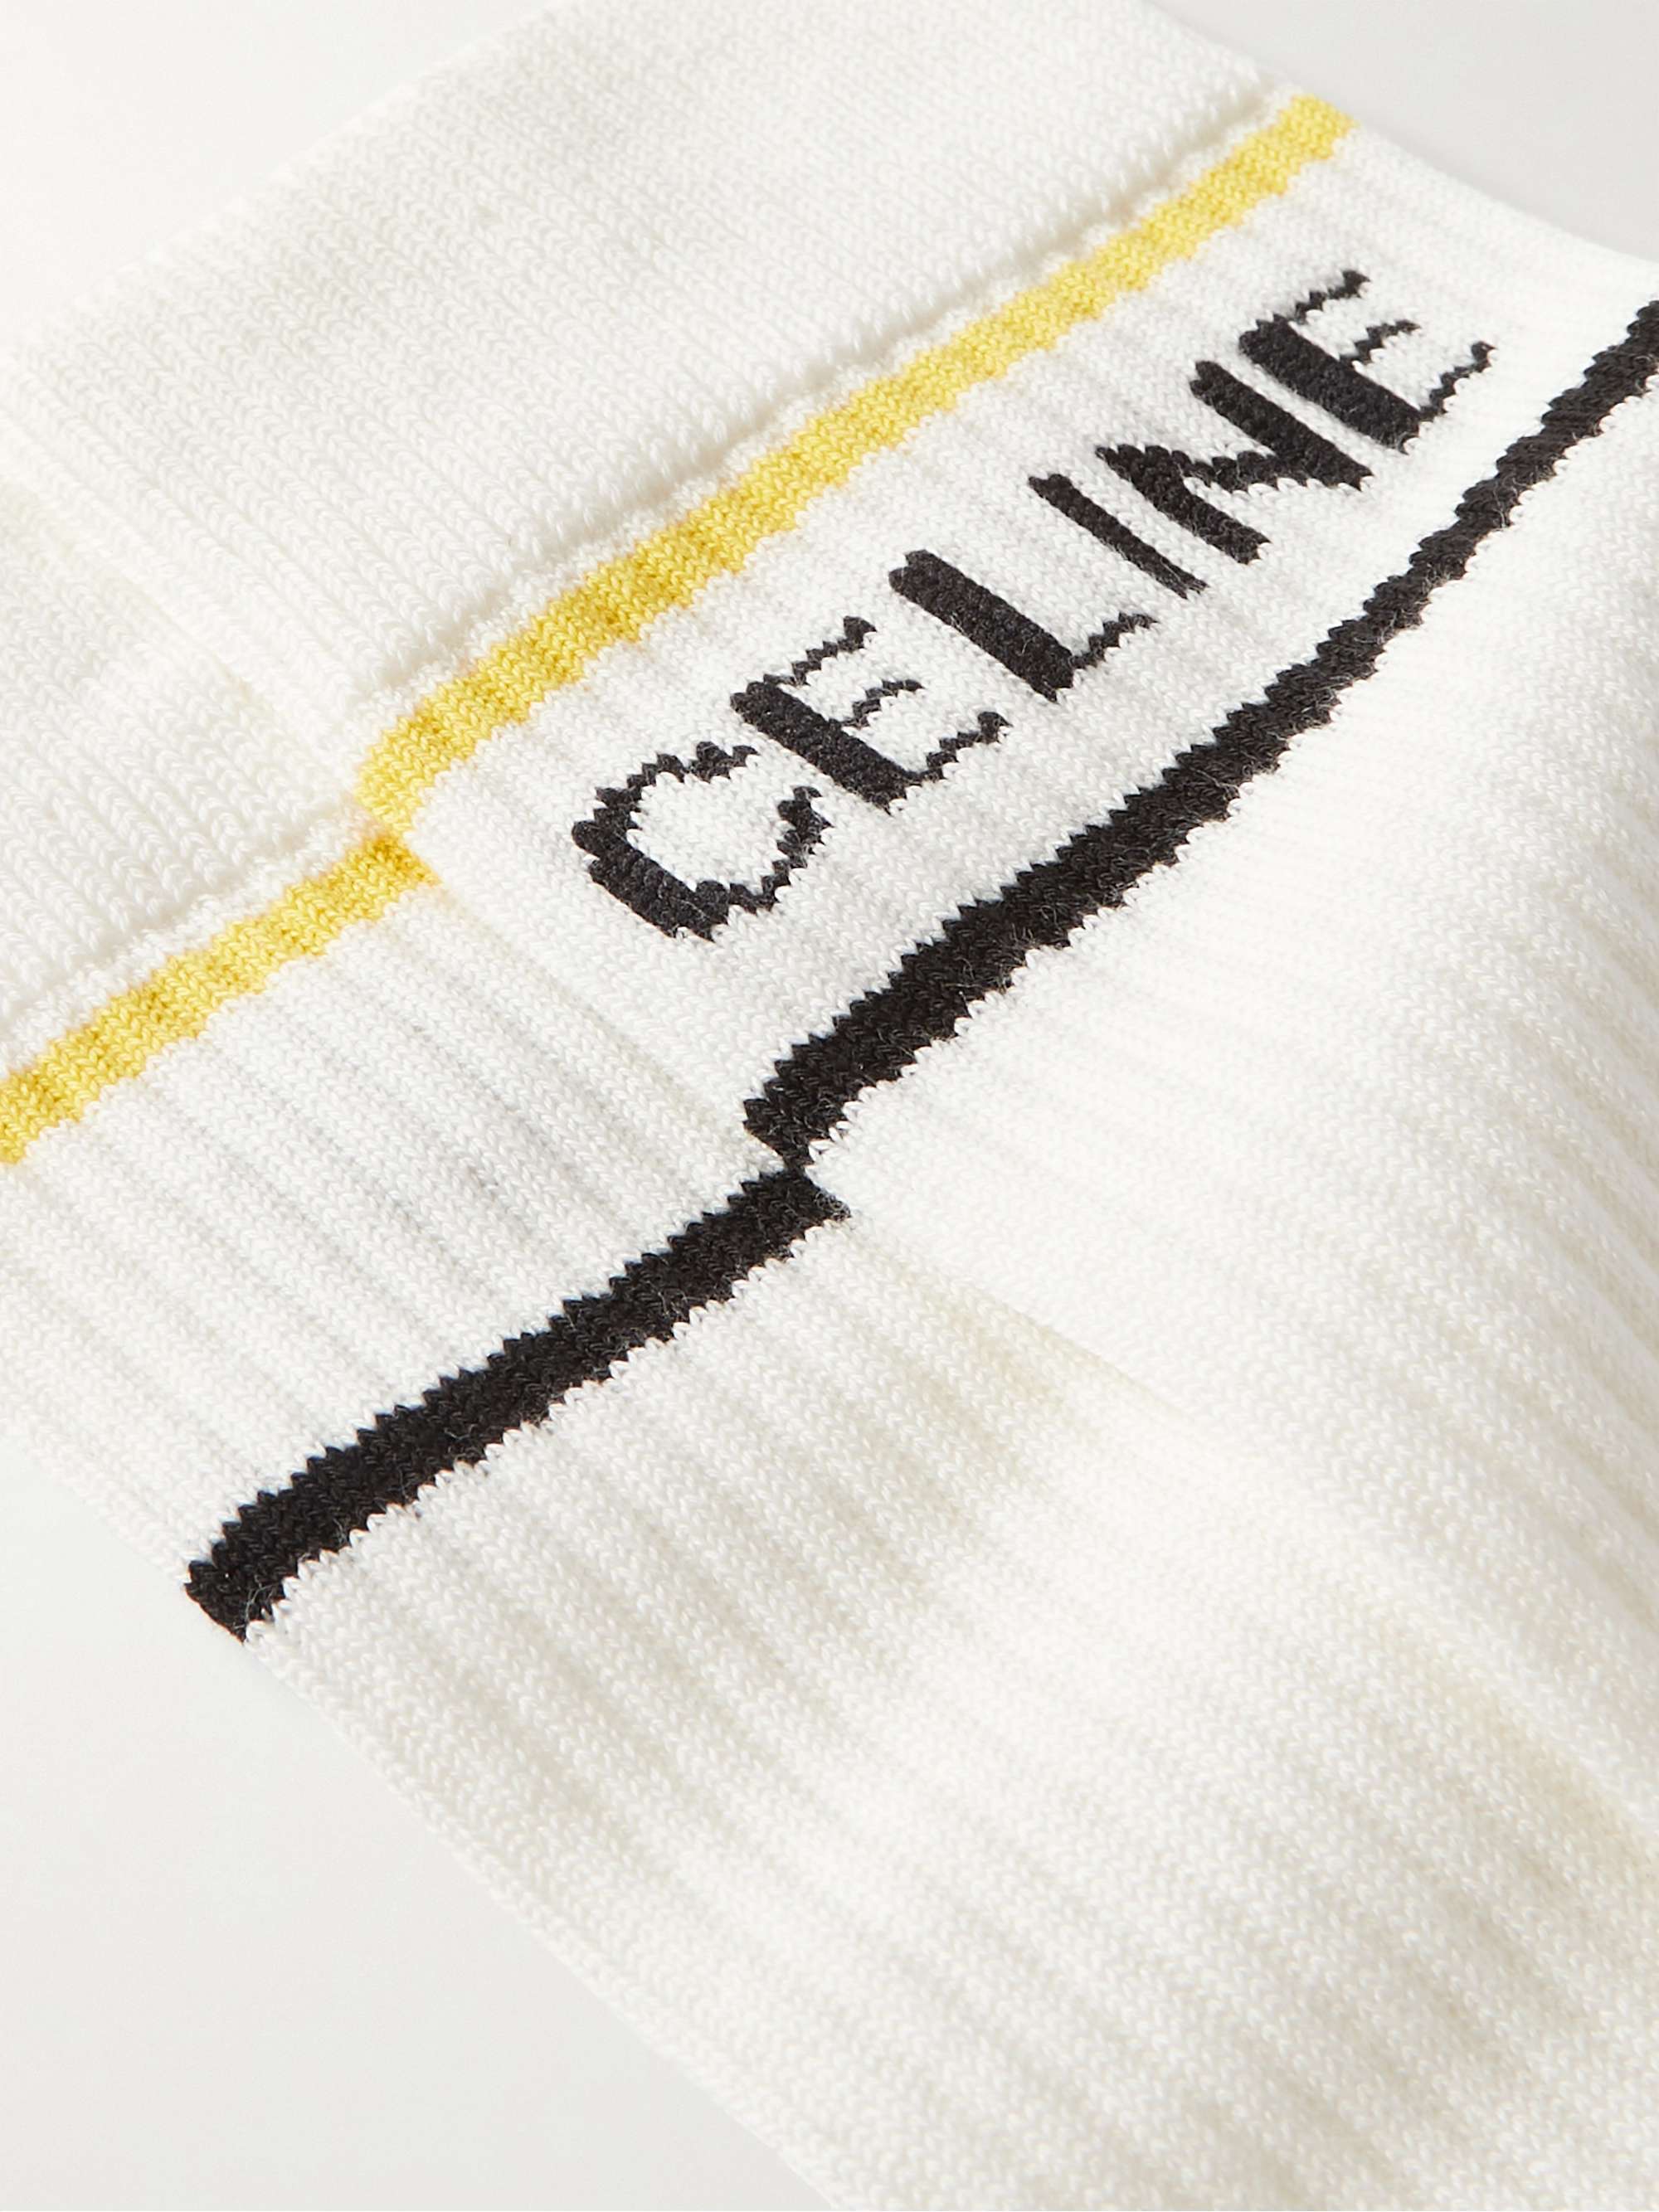 CELINE HOMME Striped Cotton-Blend Socks